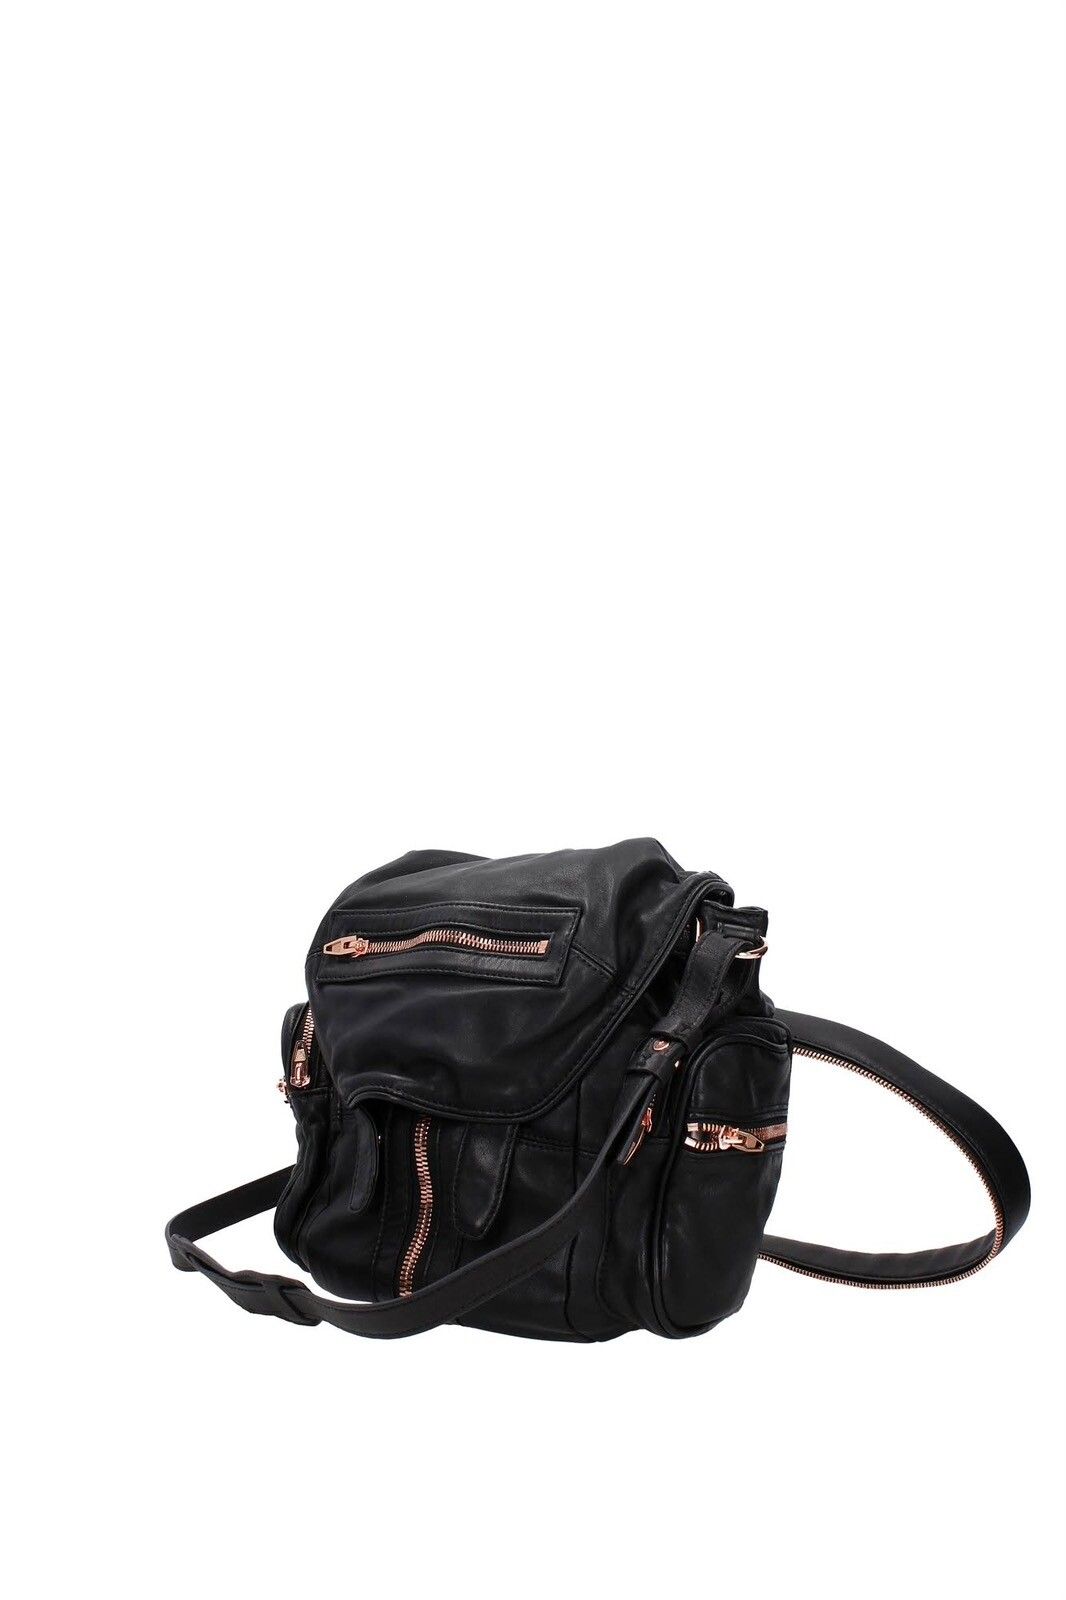 Authentic Alexander Wang Leather Backpack Shoulder Bag - 5